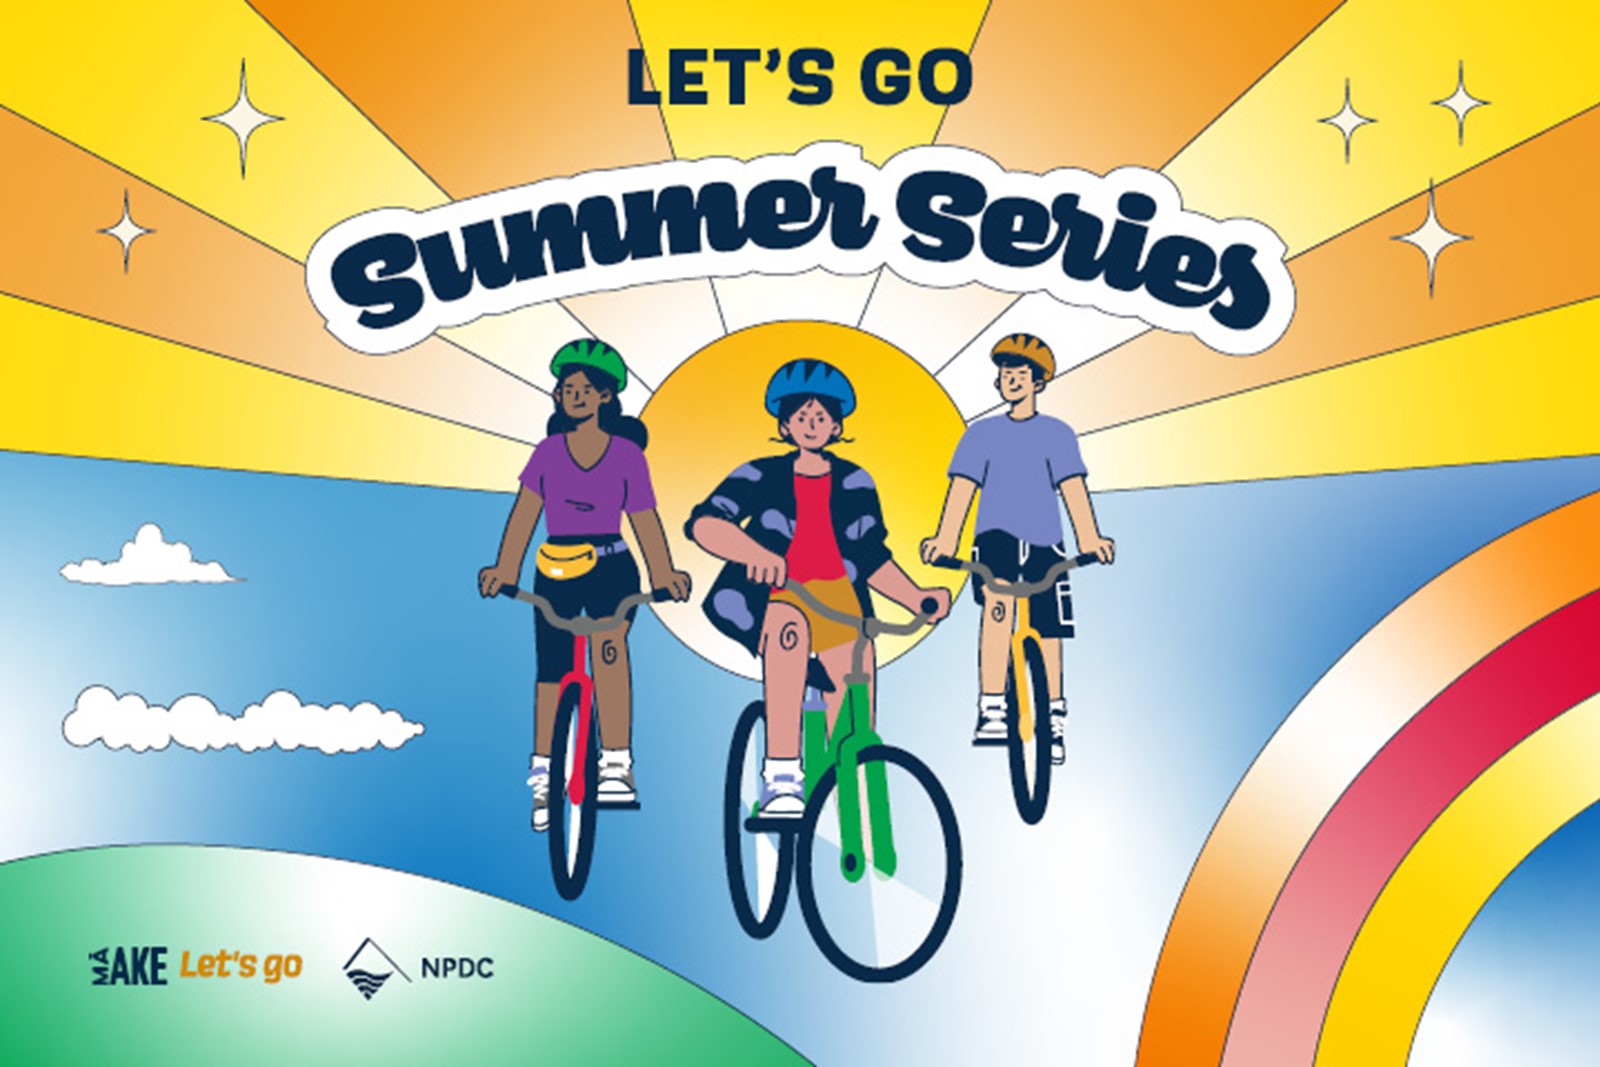 Let's Go Summer Series Bike Bash web tile.